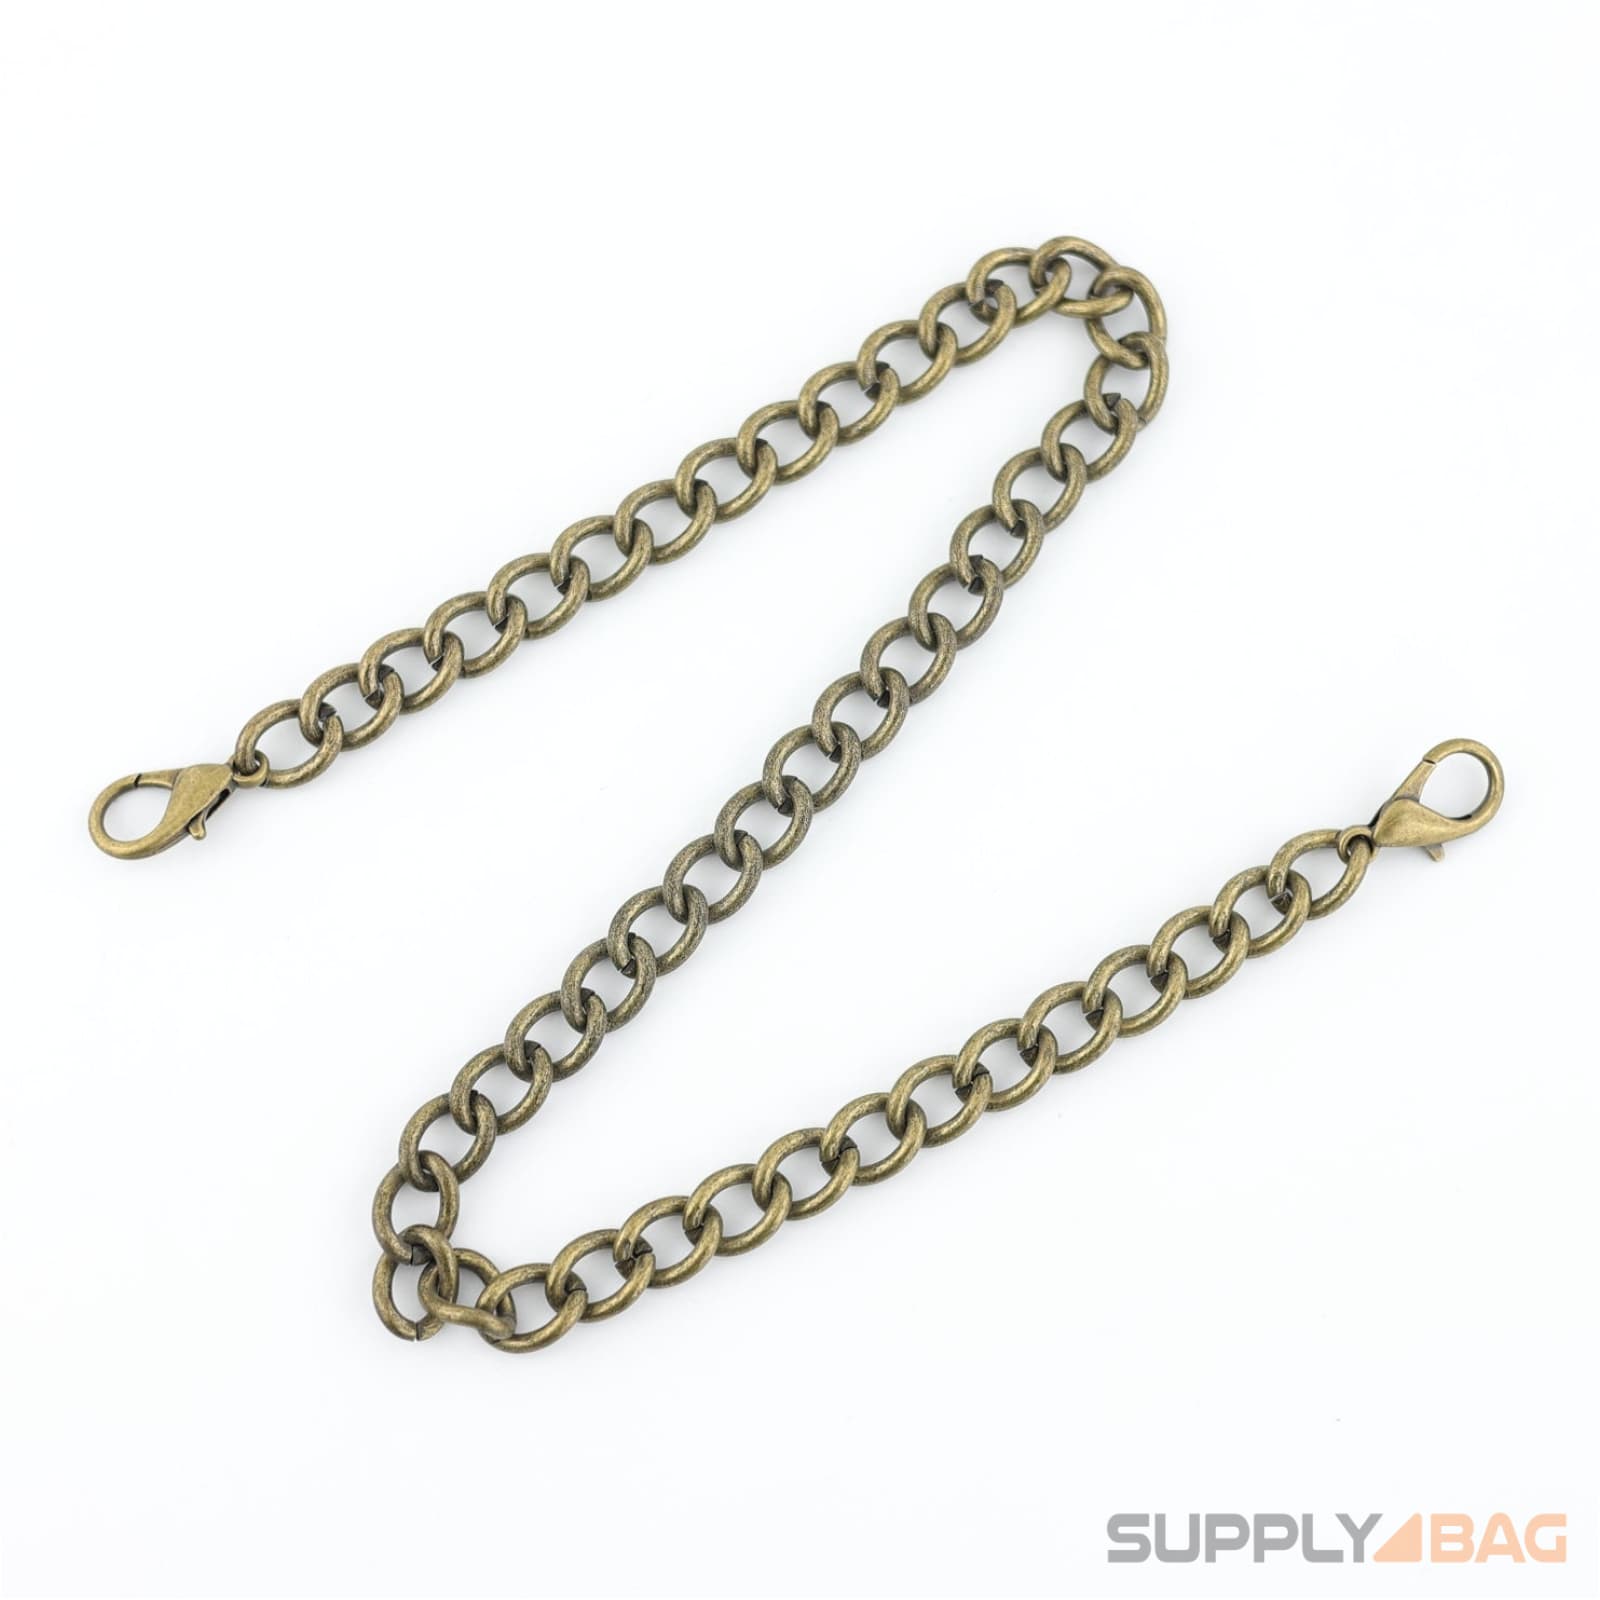 18 inch - antique brass purse chain